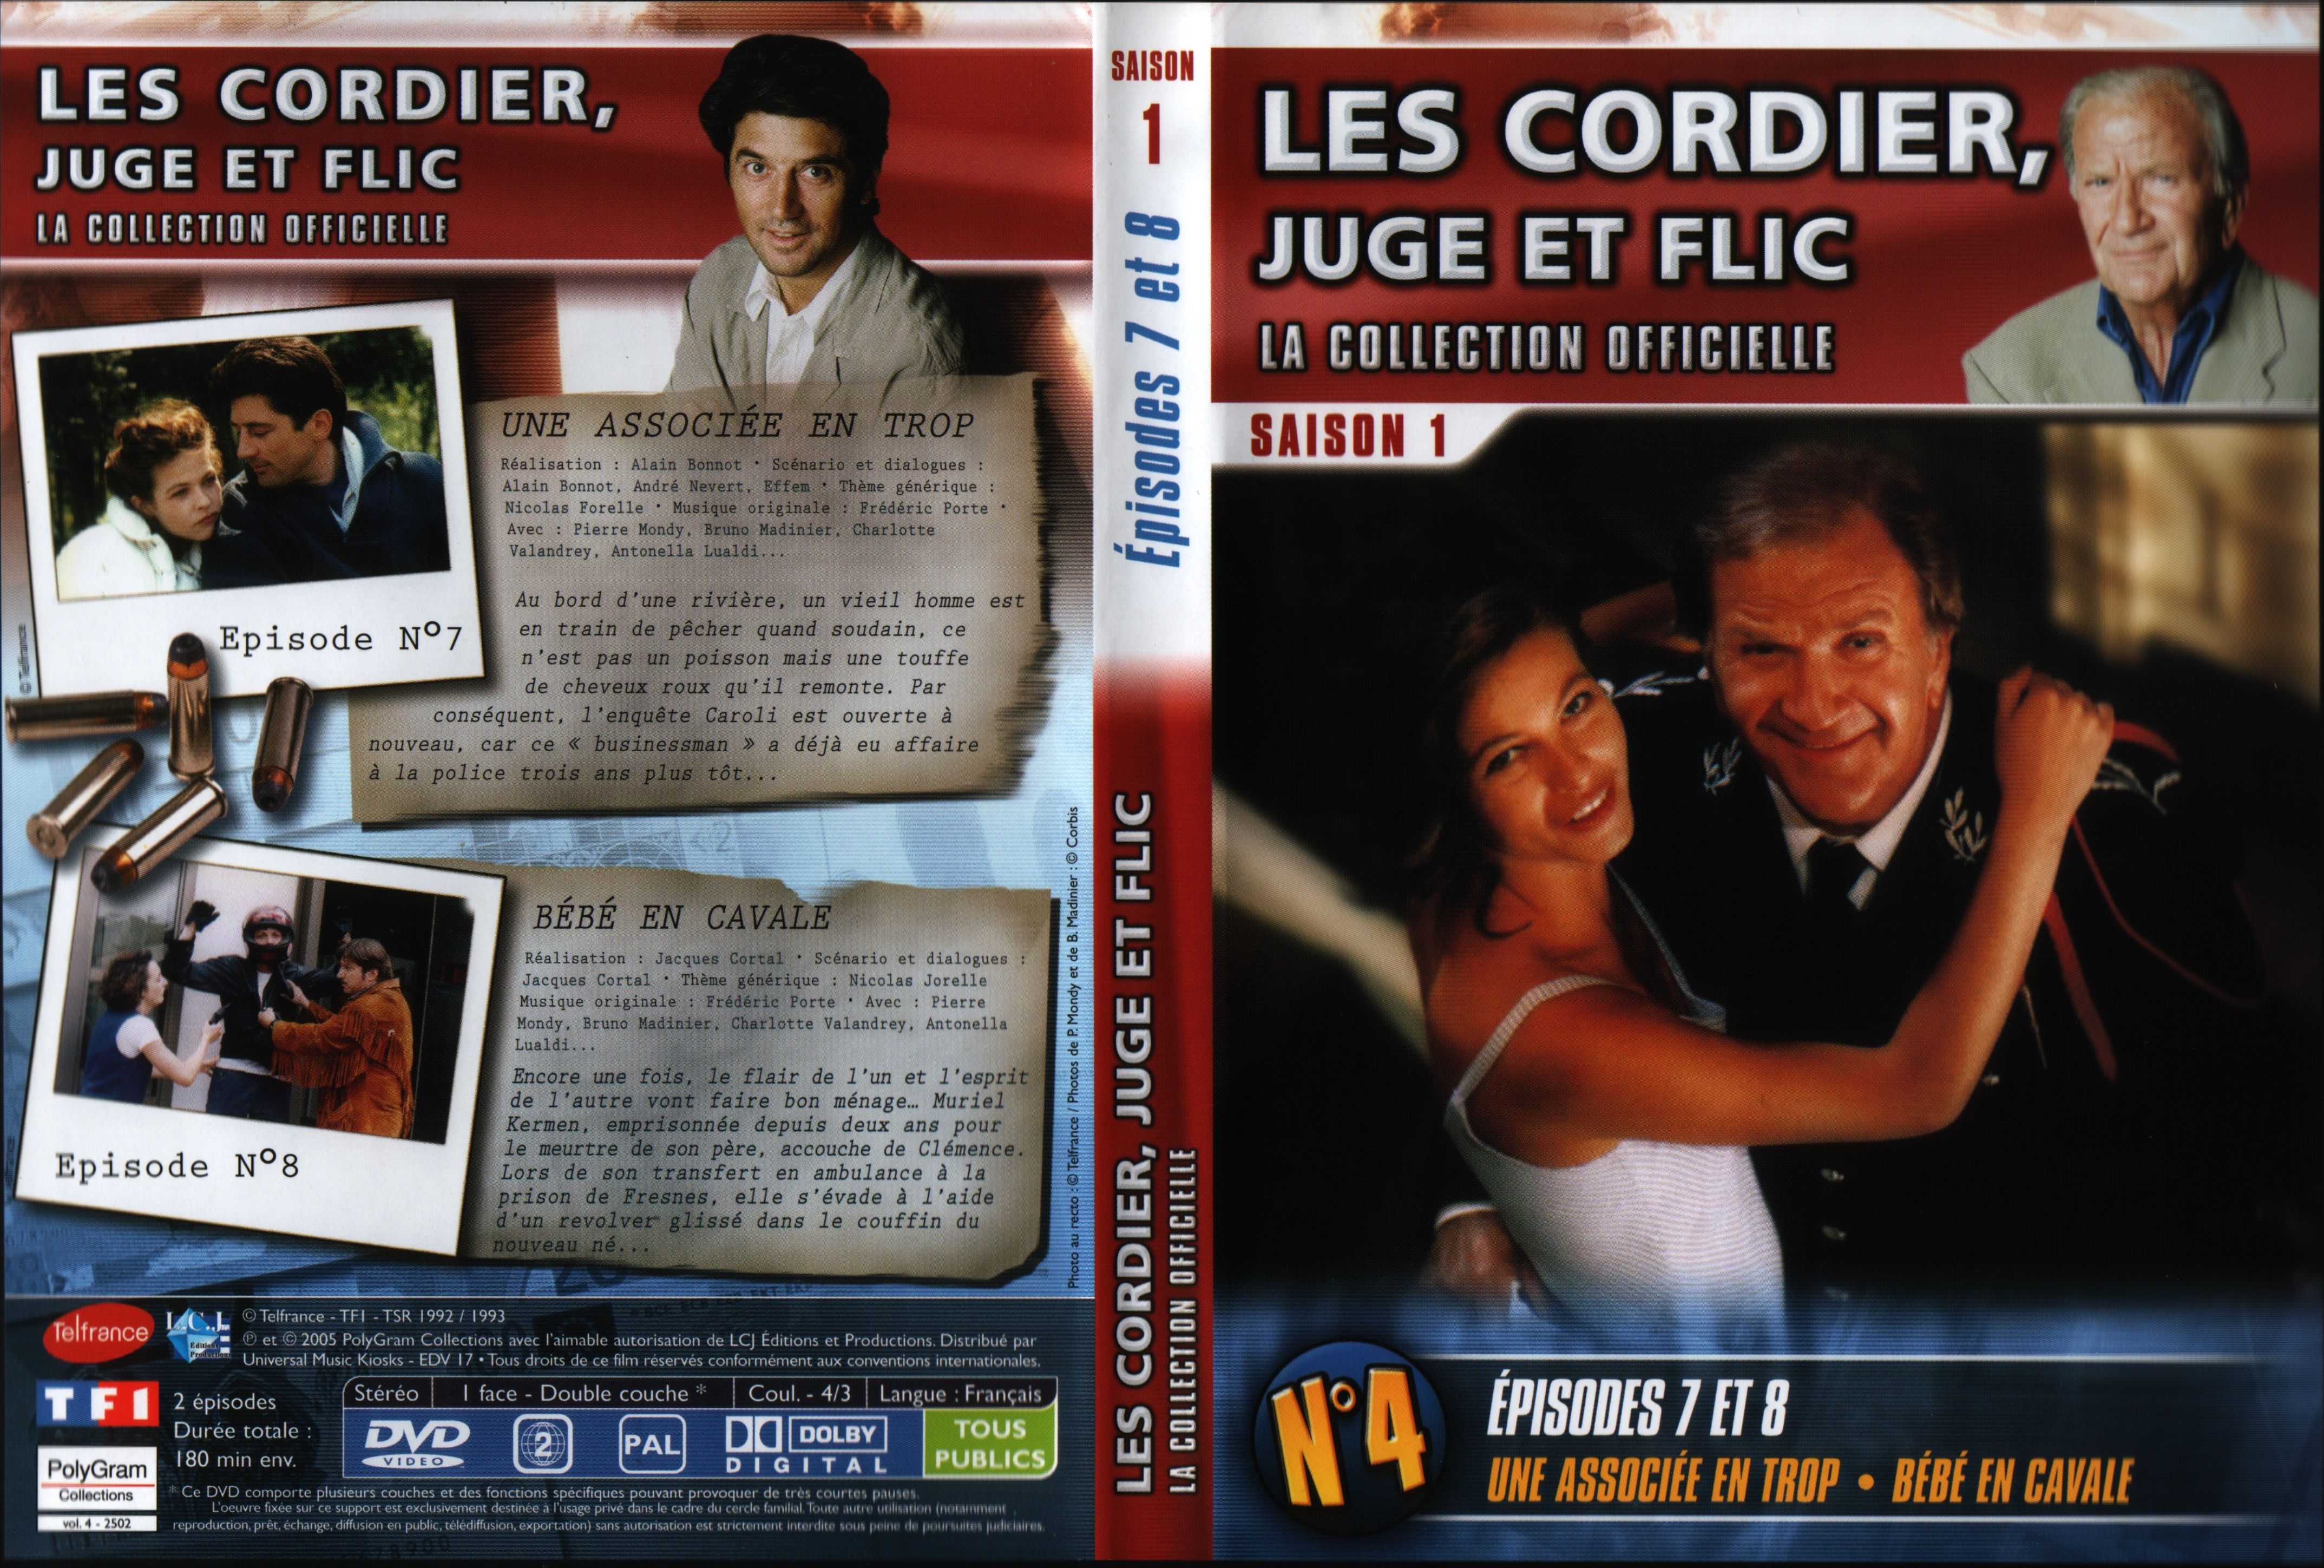 Jaquette DVD Les cordier juge et flic Saison 1 vol 4